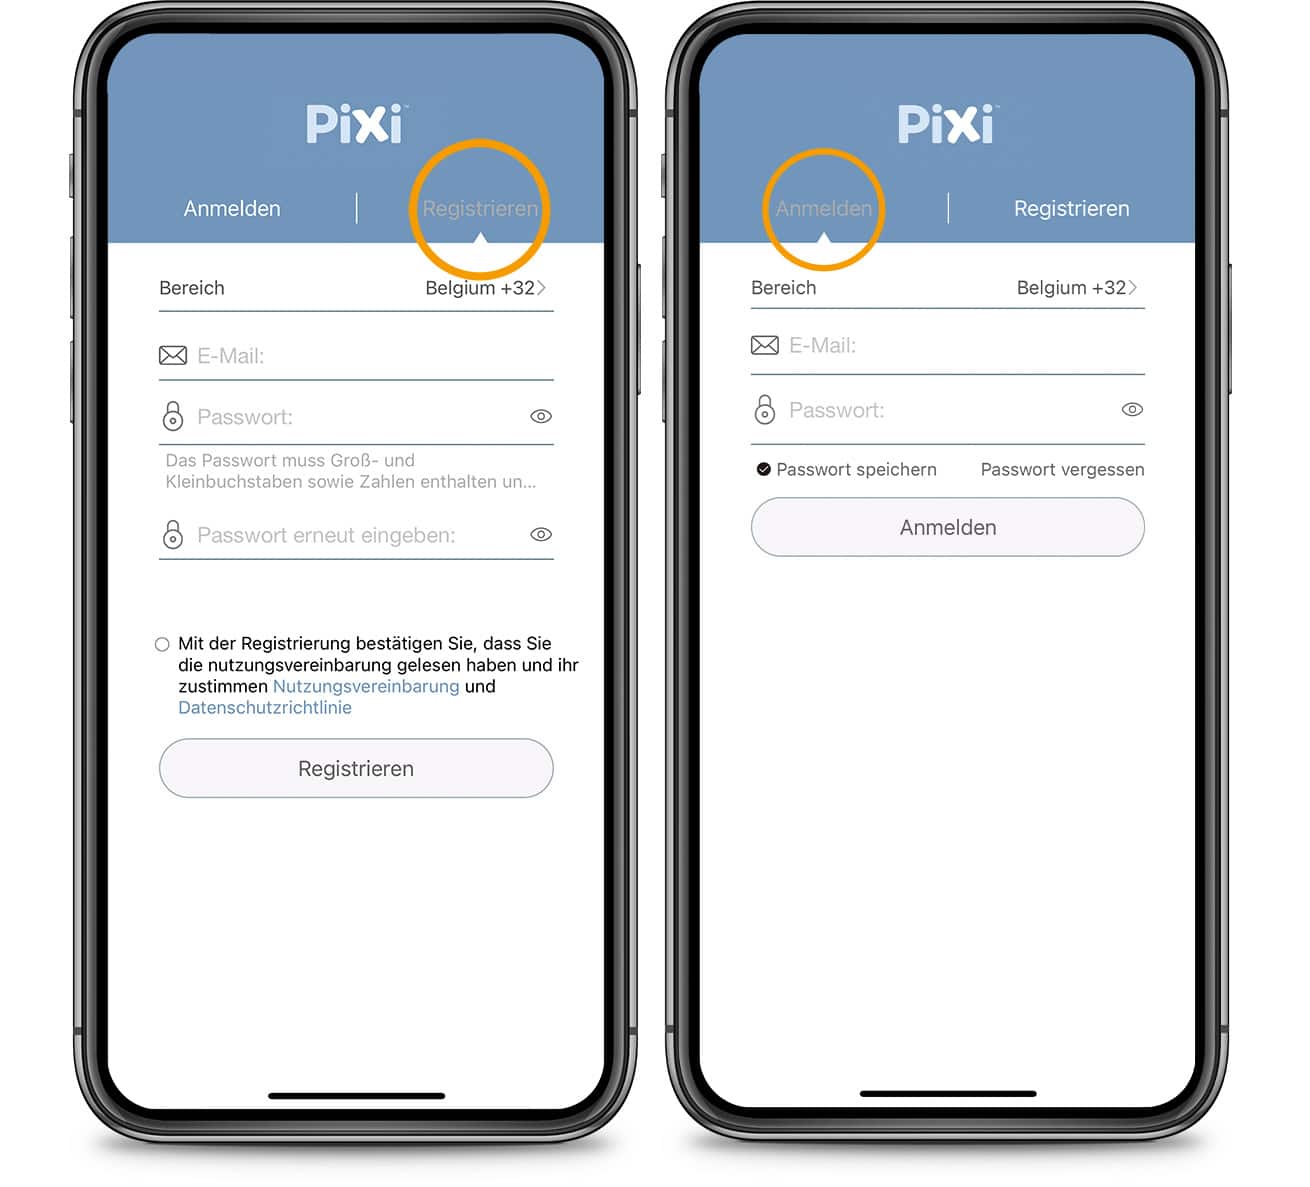 PIXI App – Anmelden / Registrieren